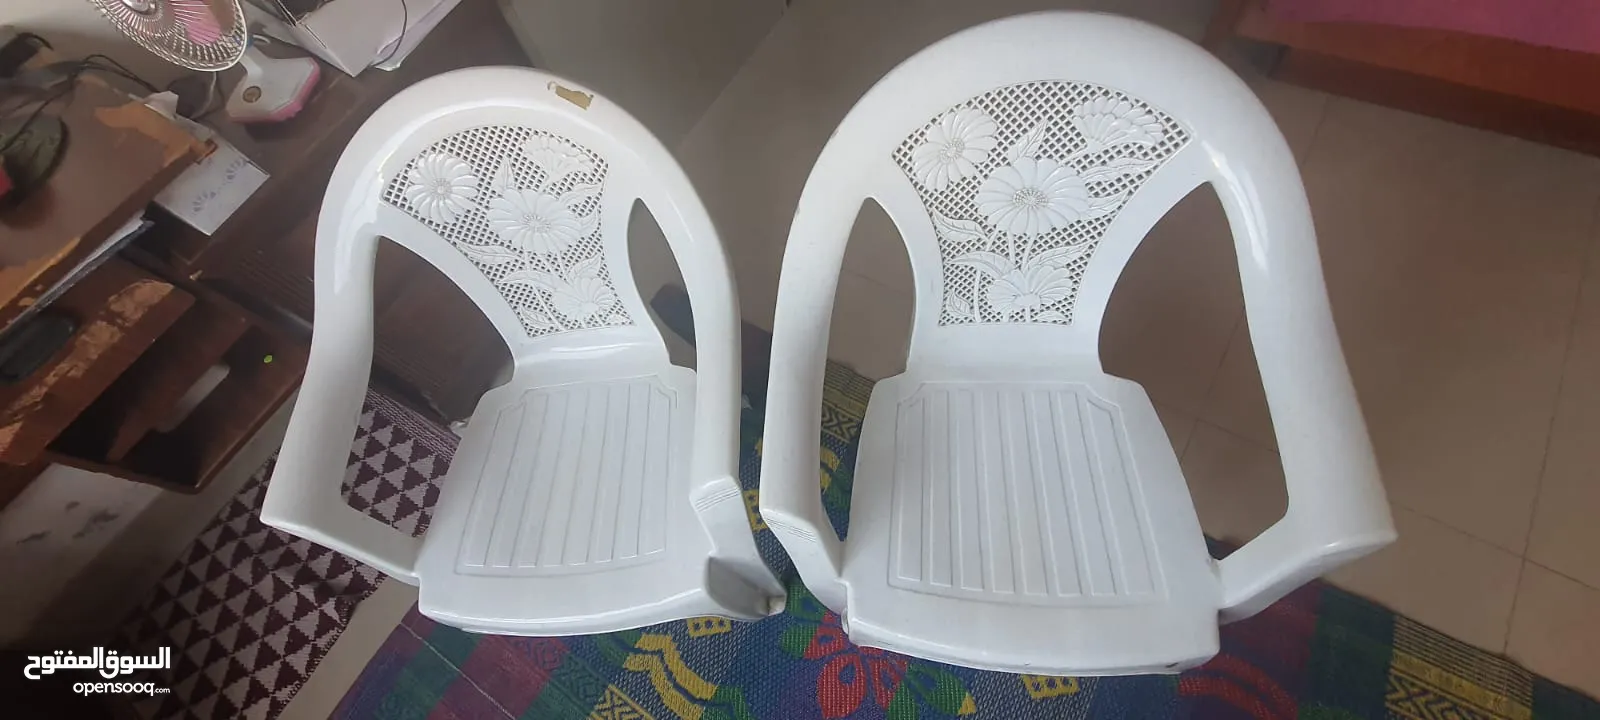 Nilkamal chairs for sale (2no)-